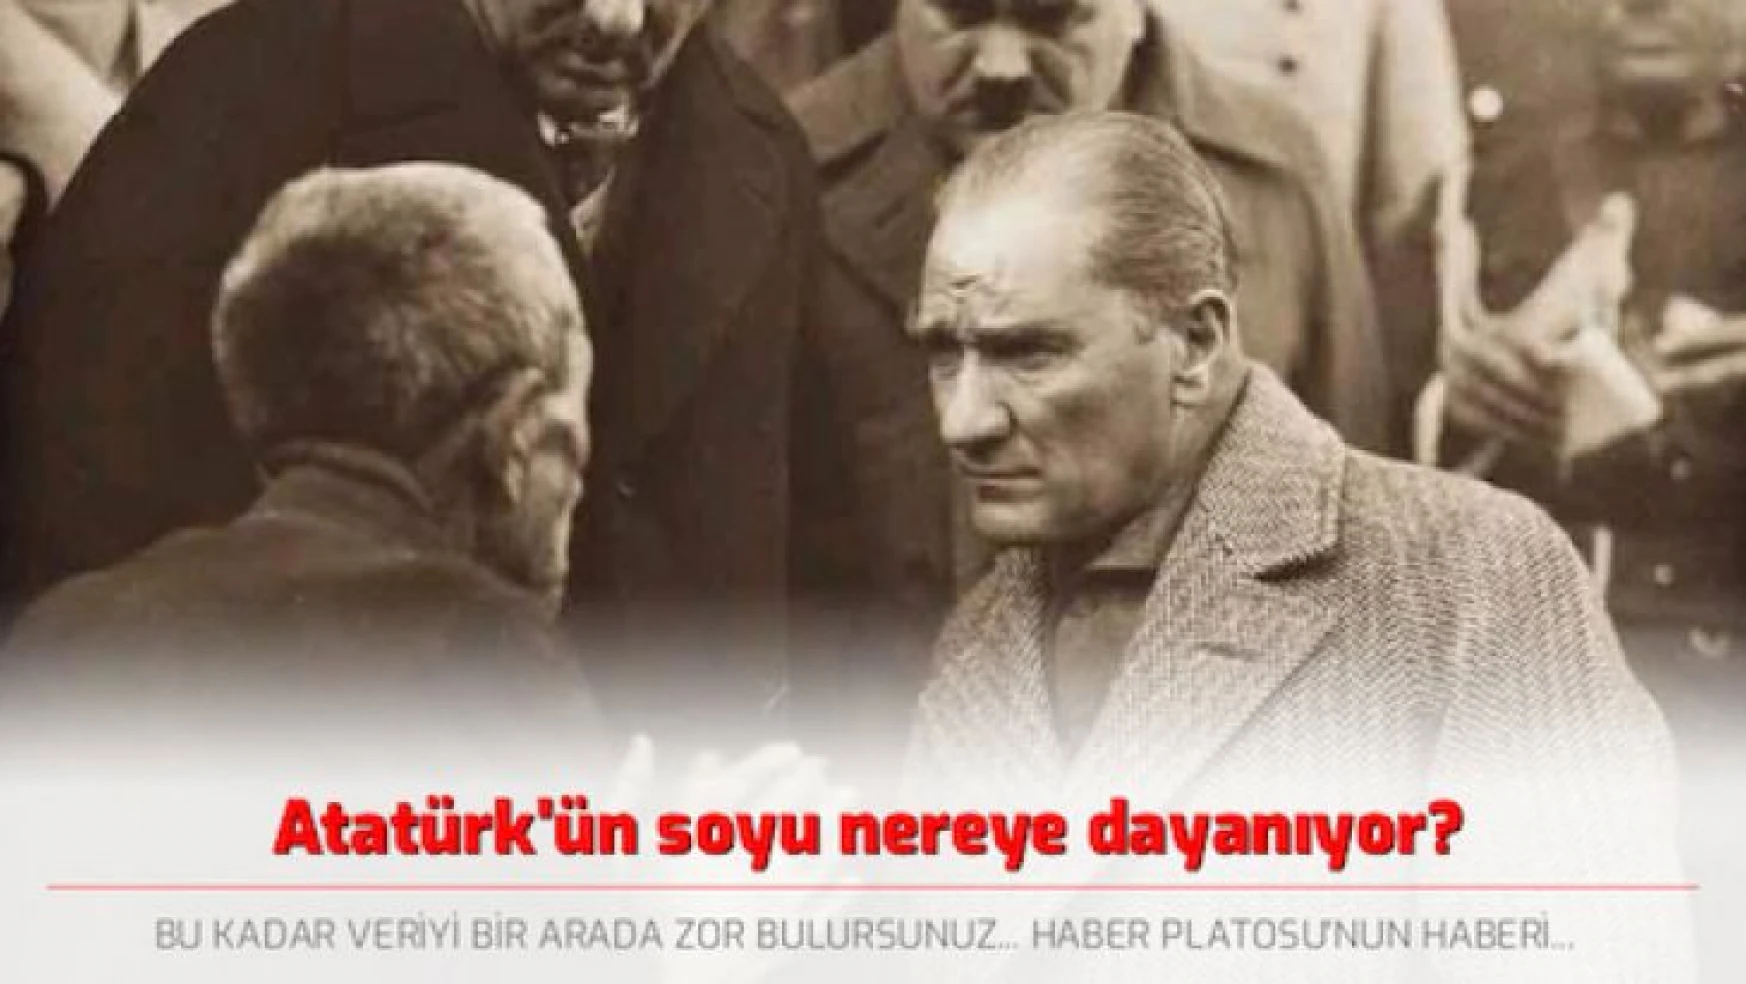 Atatürk'ün soyu nereye dayanıyor?